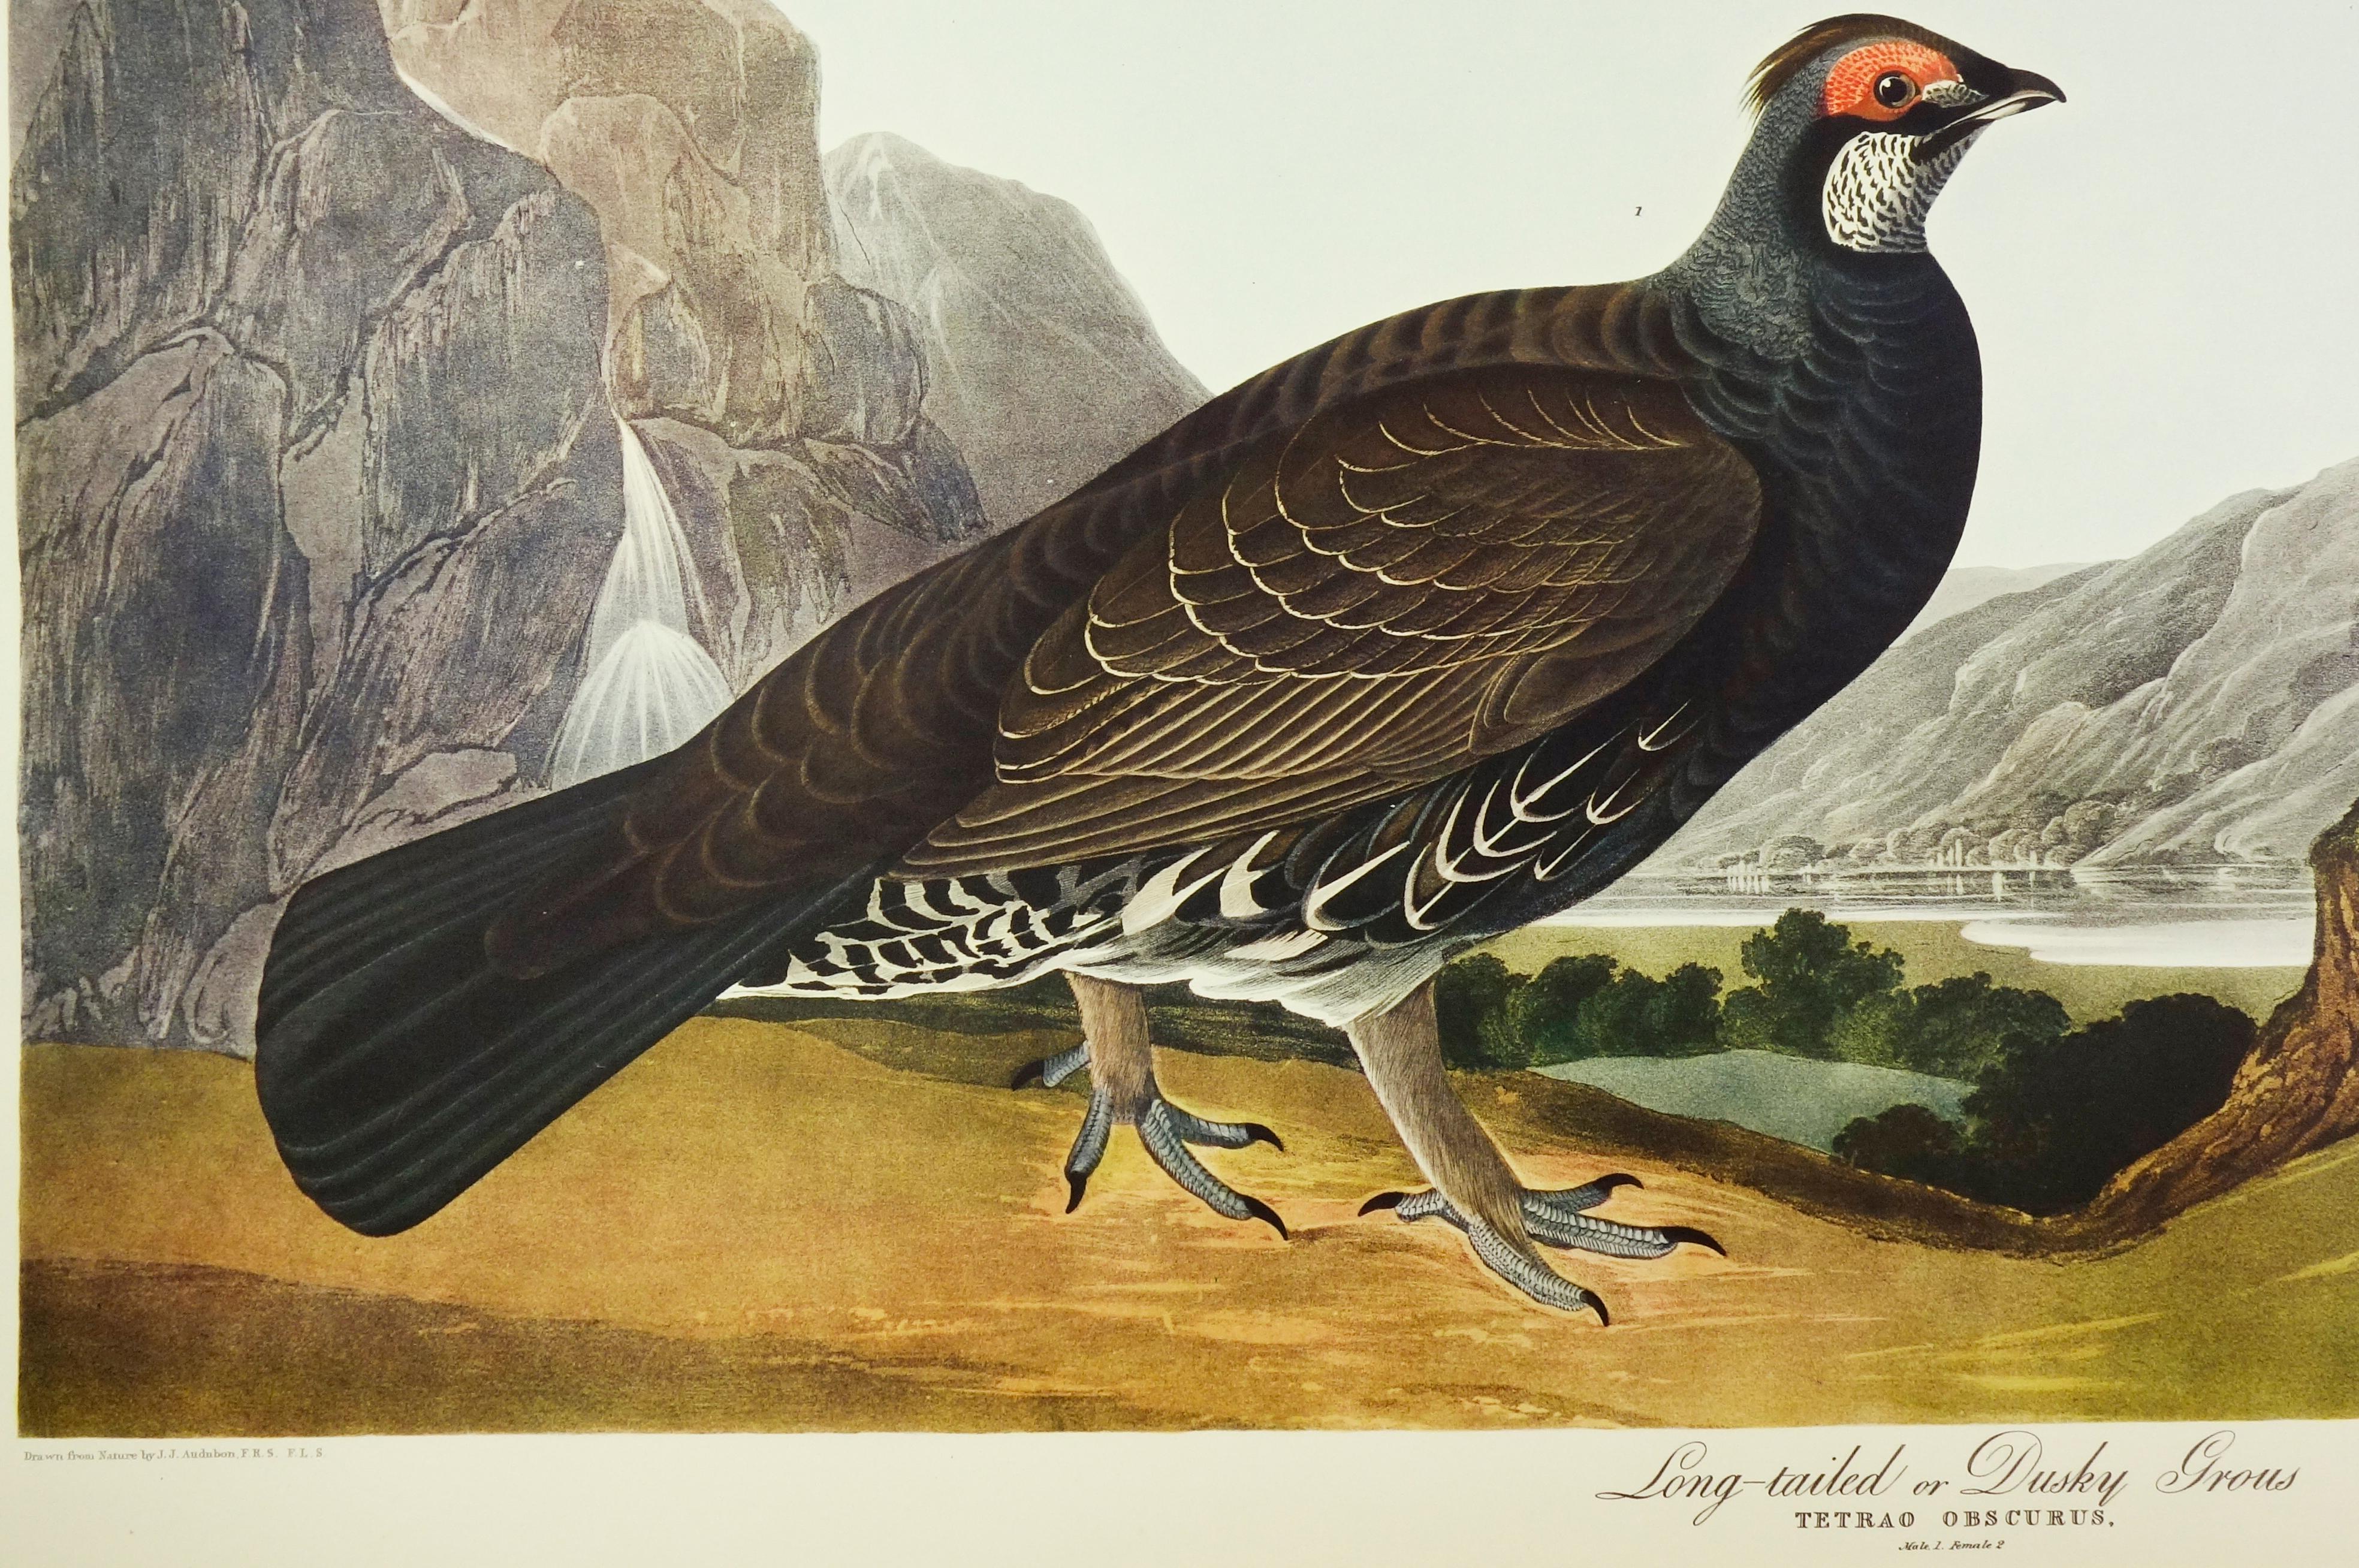 Long-Tailed or Dusky Gros - Realist Print by John James Audubon